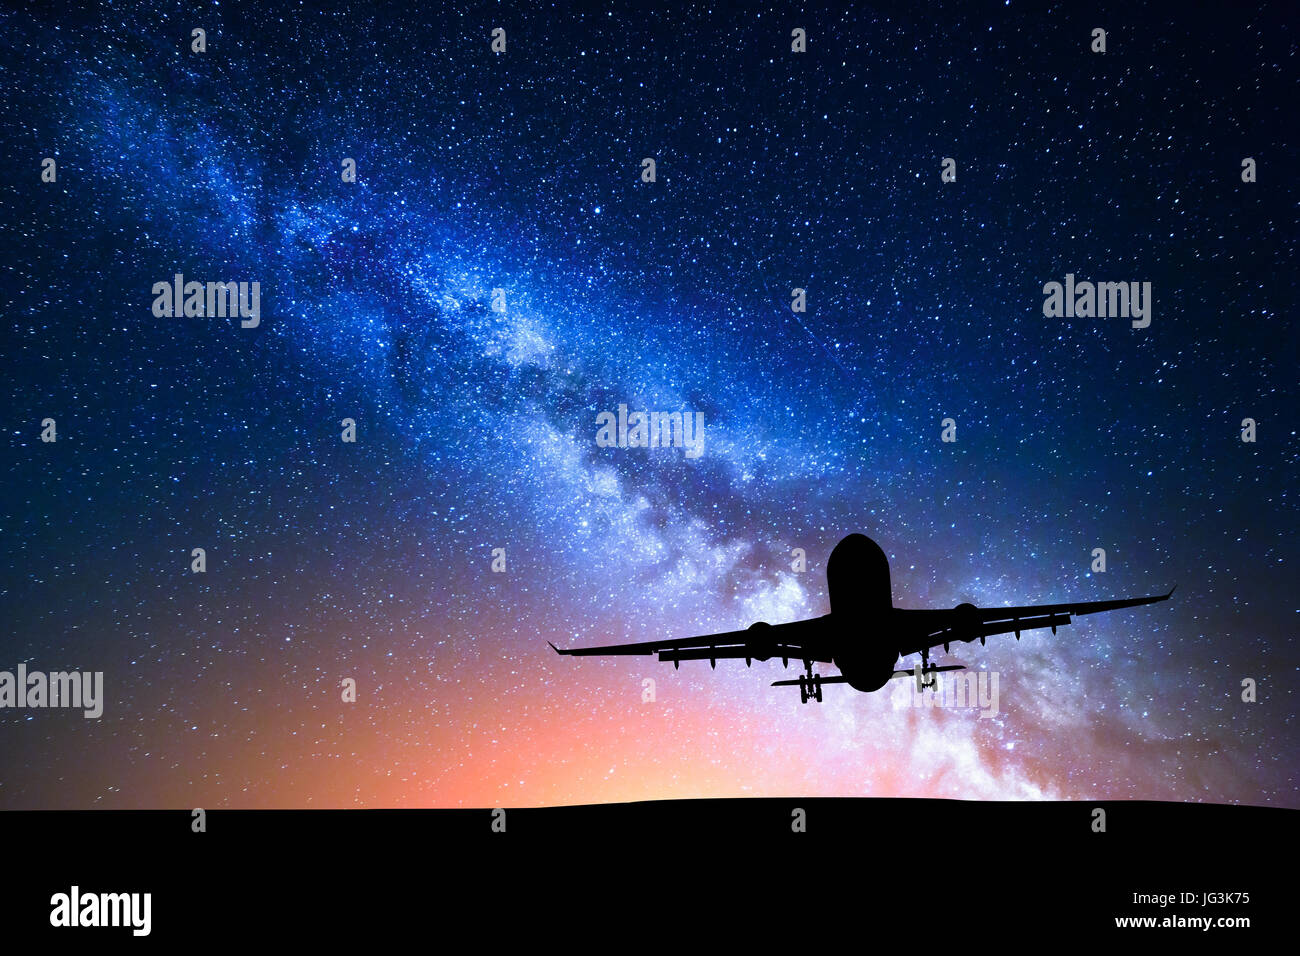 Voie lactée et silhouette d'un avion. Paysage avec un avion de passagers s'envole dans le ciel étoilé la nuit. Arrière-plan de l'espace. Avion de ligne Banque D'Images